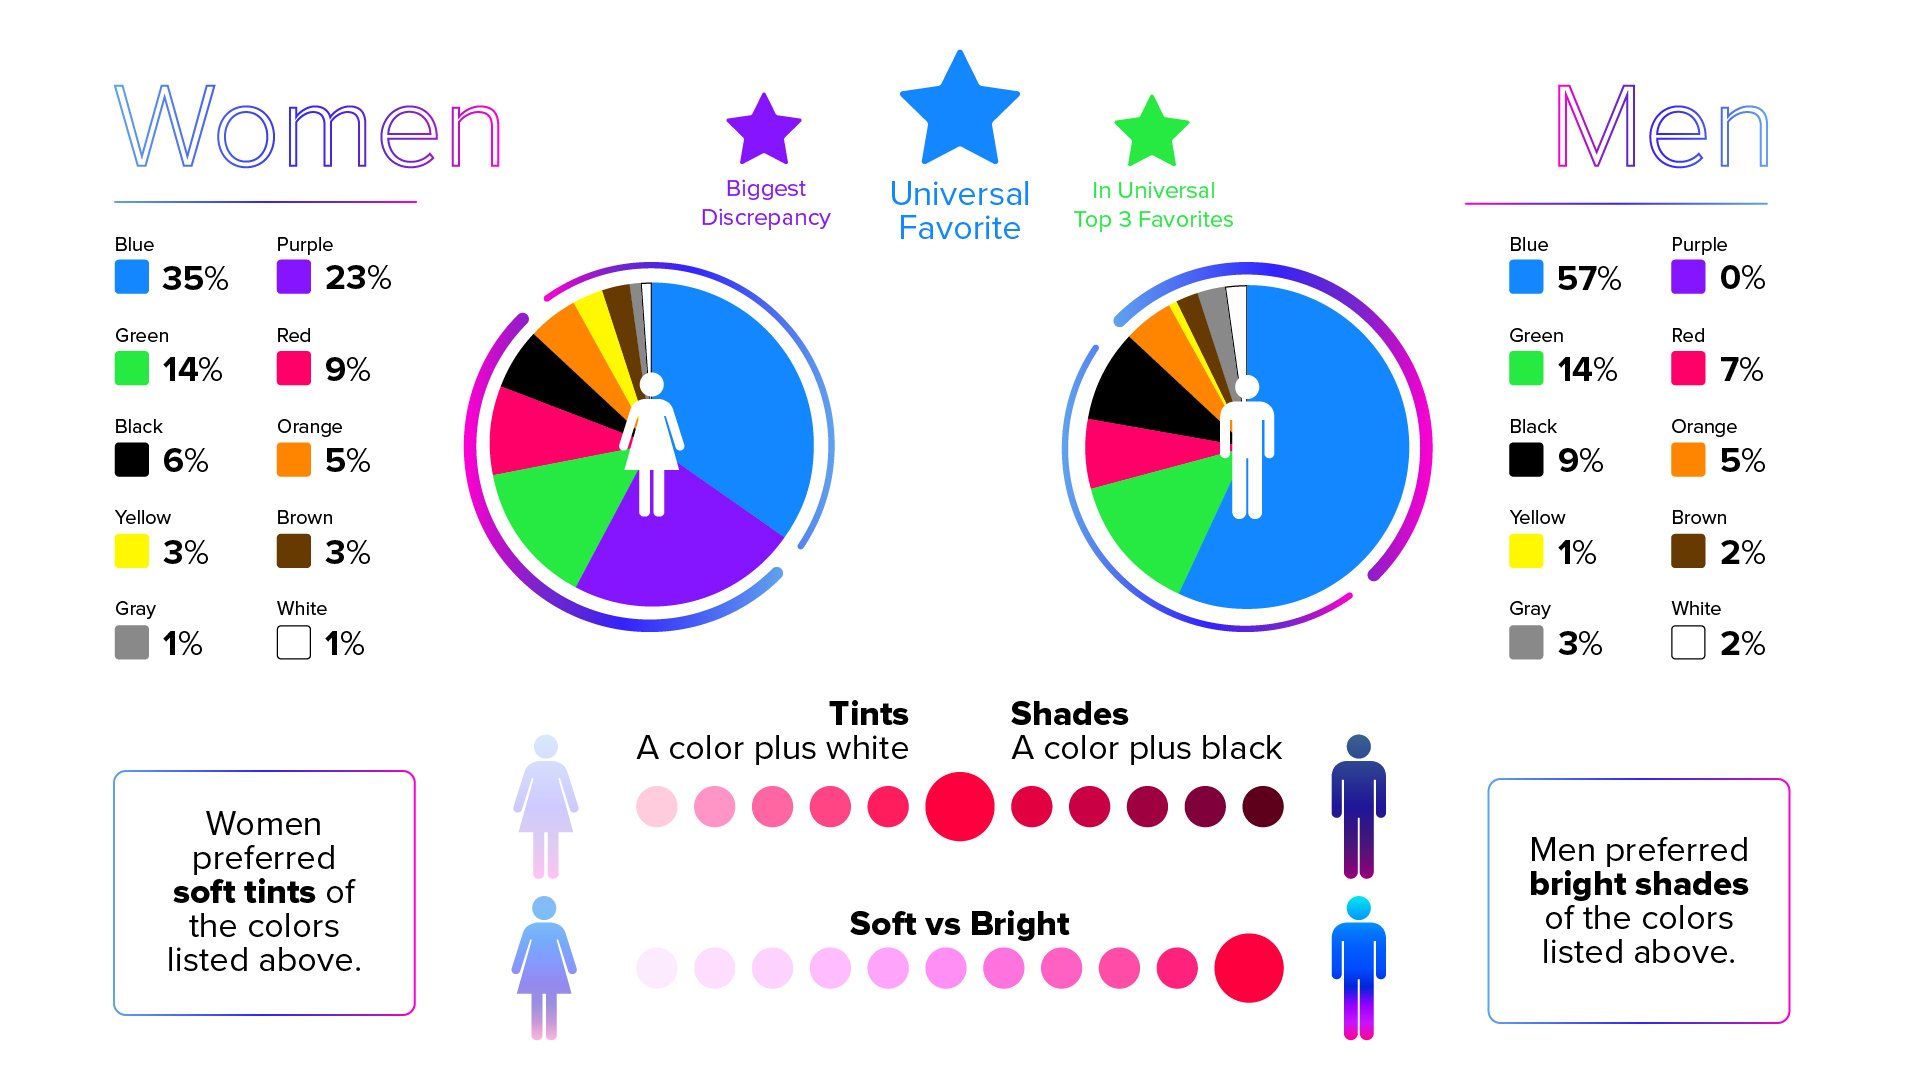 Statistics of men and women's favorite colors